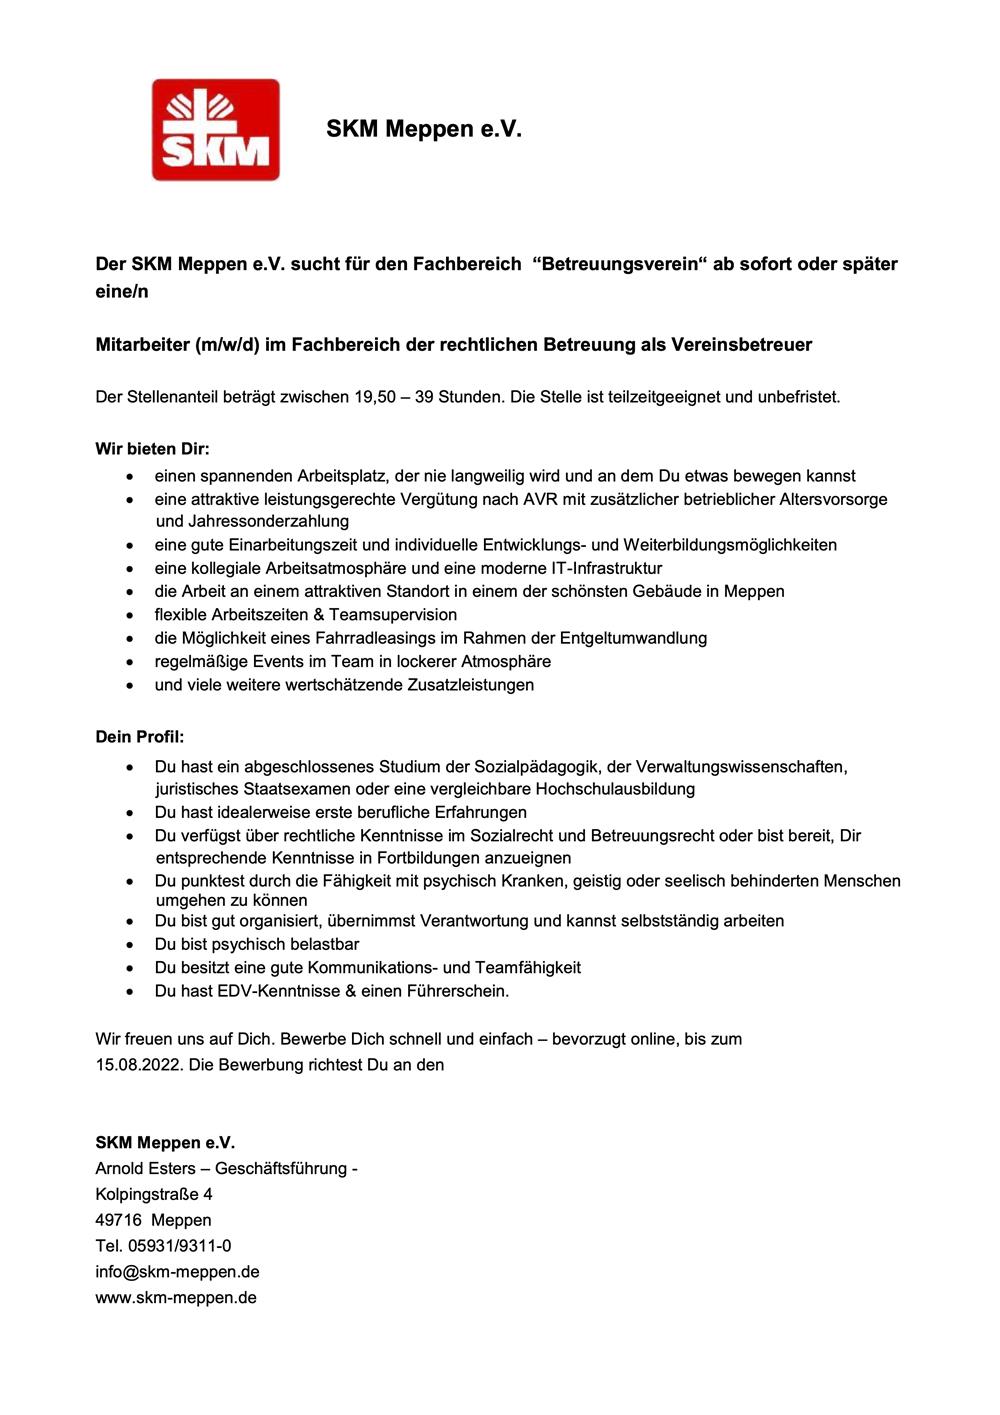 Stellen - 009 - 2022-08-01 SKM Meppen - recht. Betreuung als Vereinsbetreuer